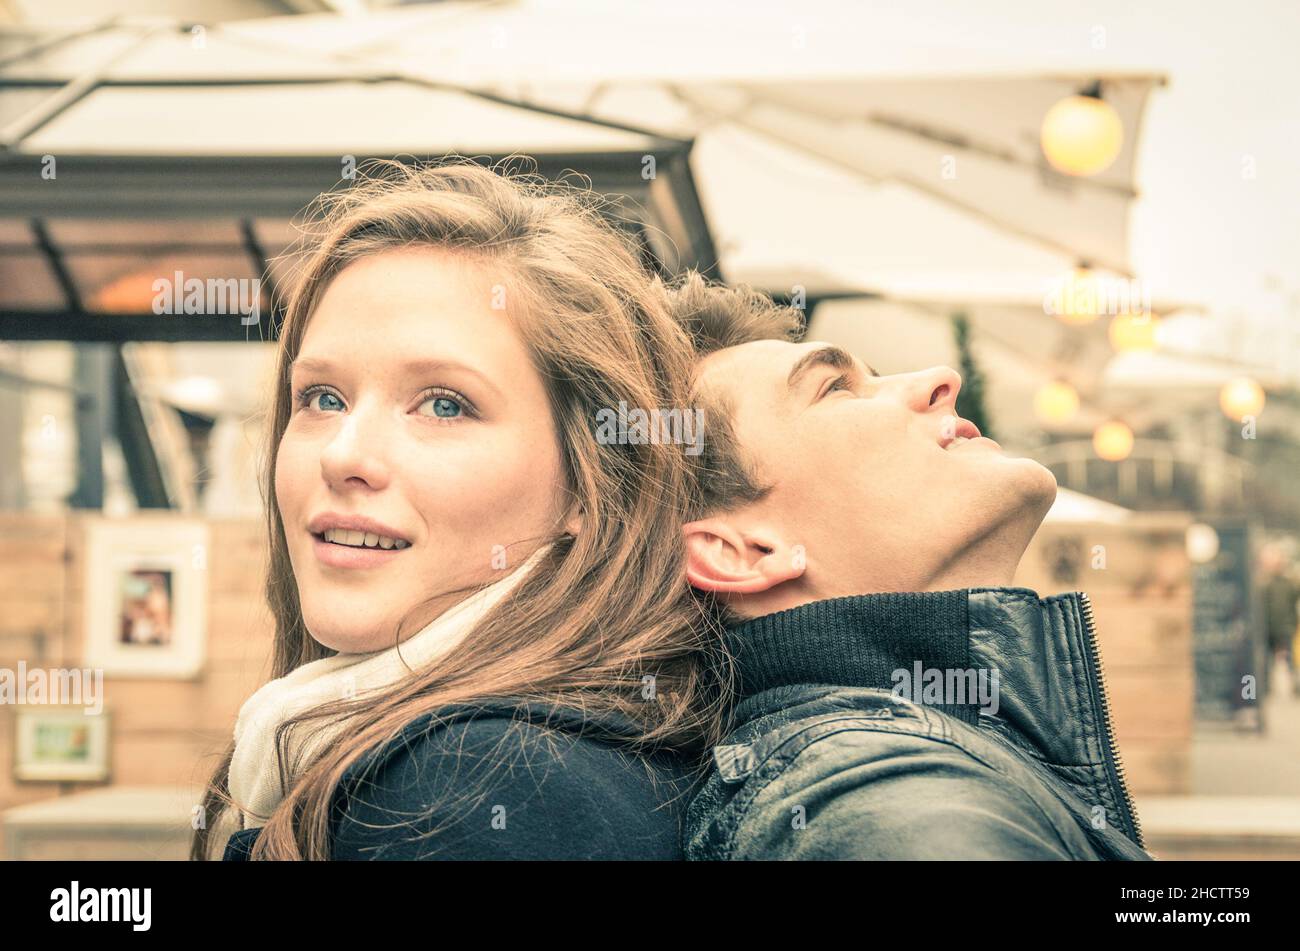 Liebespaar am Anfang einer Liebesgeschichte - Konzept des Glücks mit ektstatischen Gefühlen in einem ganz besonderen Moment des Lebensstils junger Menschen Stockfoto